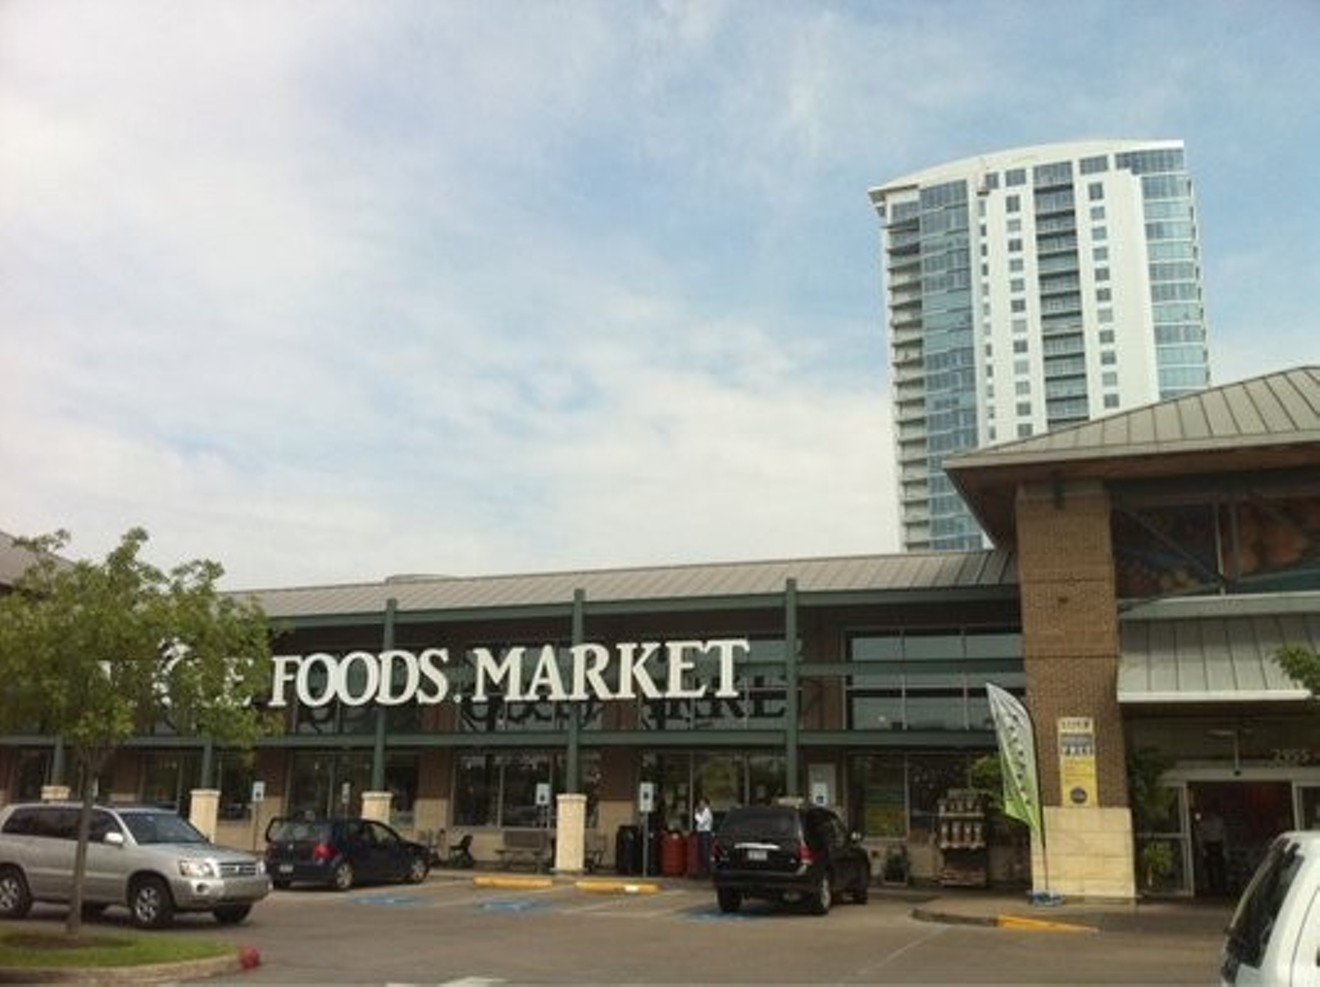 The Whole Foods Market in Lower Shepherd-Kirby.